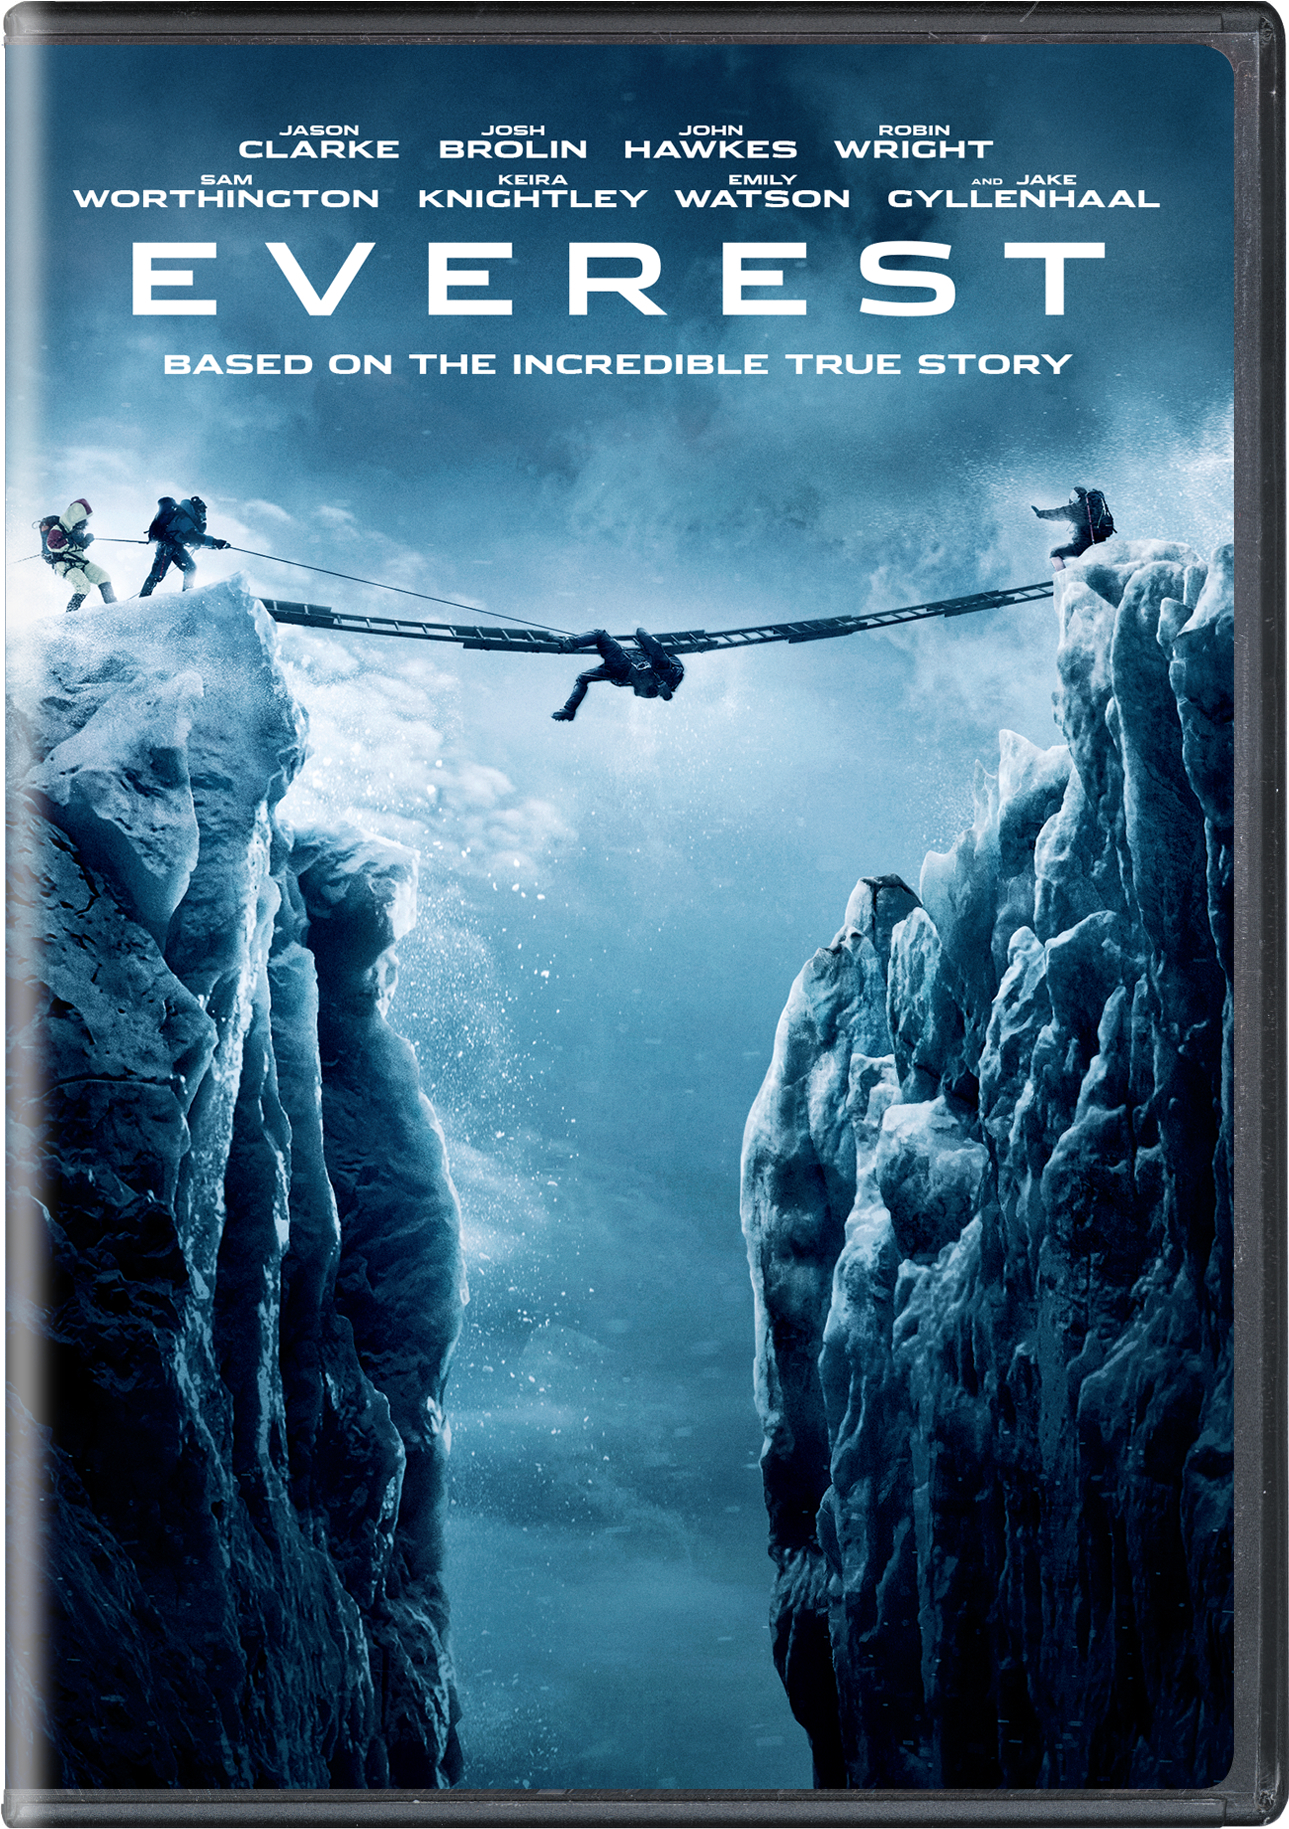 Everest - DVD [ 2015 ]  - Thriller Movies On DVD - Movies On GRUV